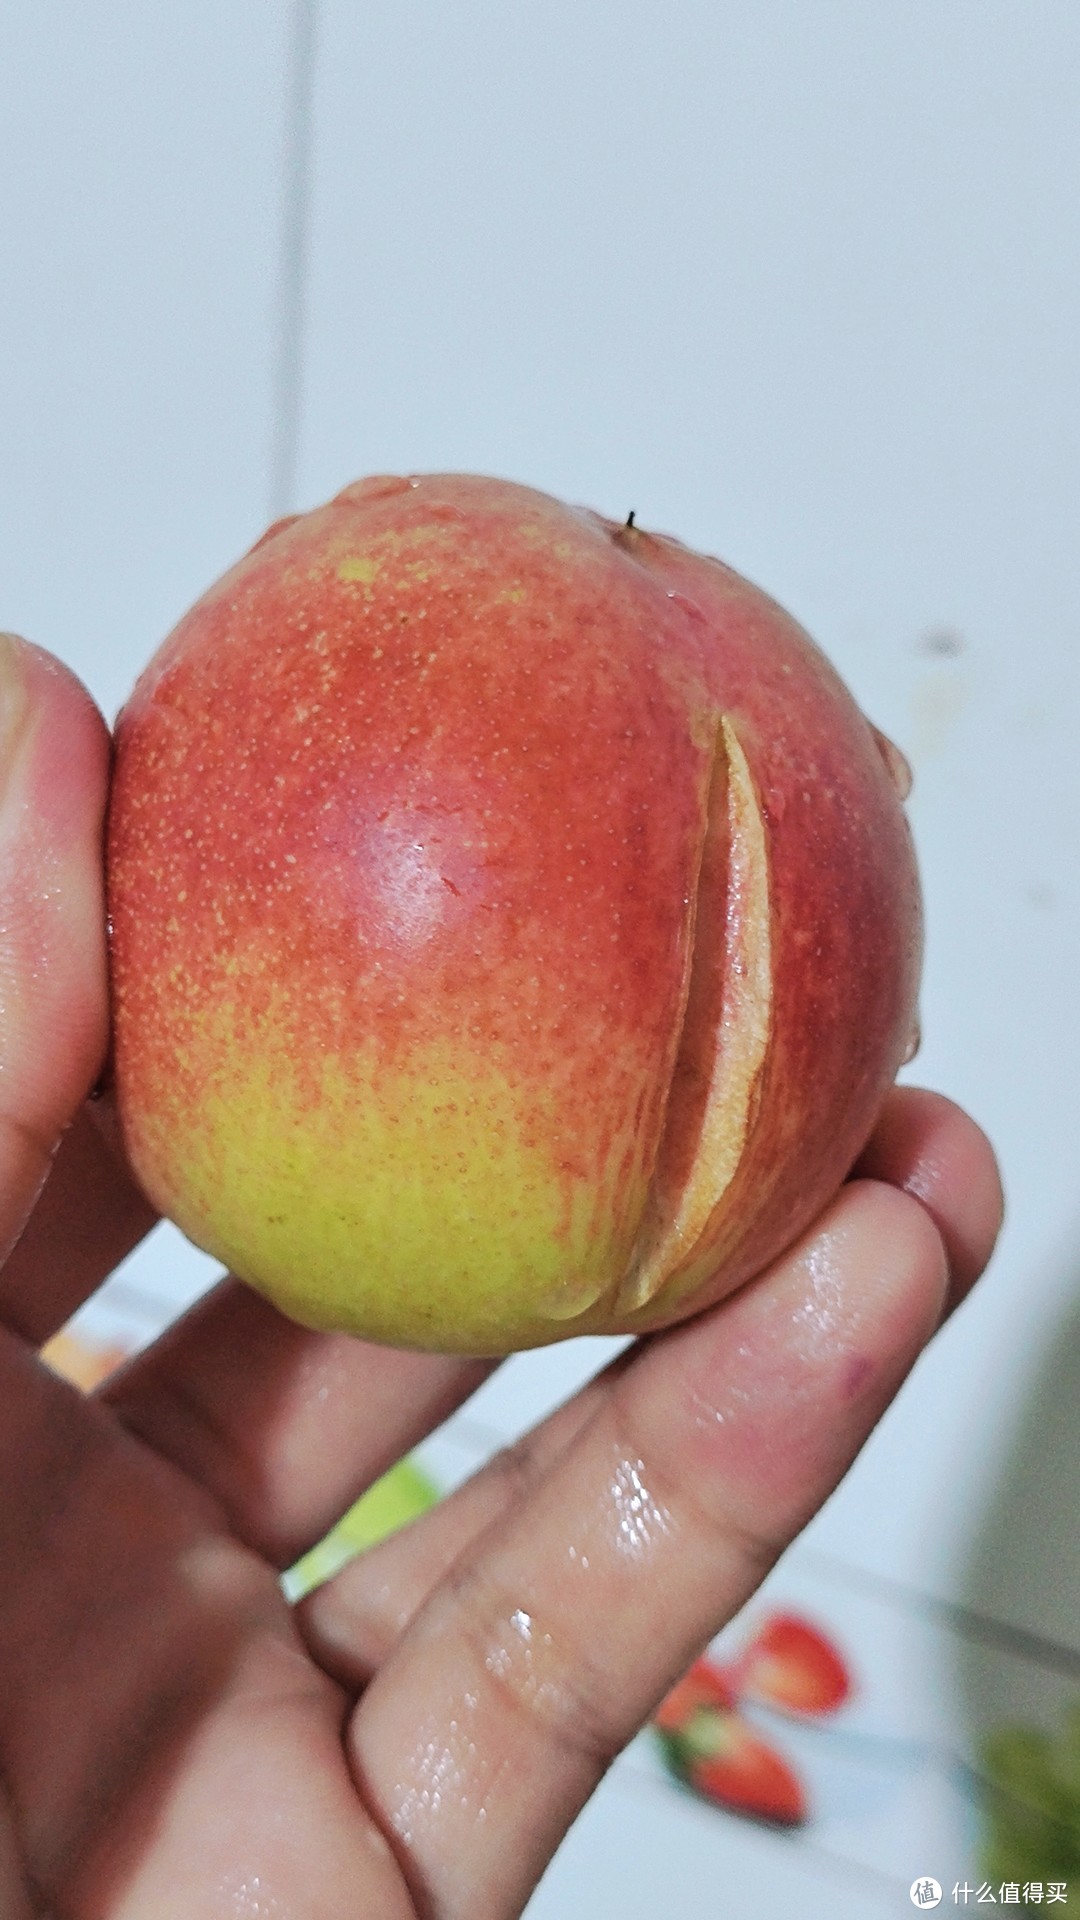 这个长了屁股的桃子有点小，但是很甜。